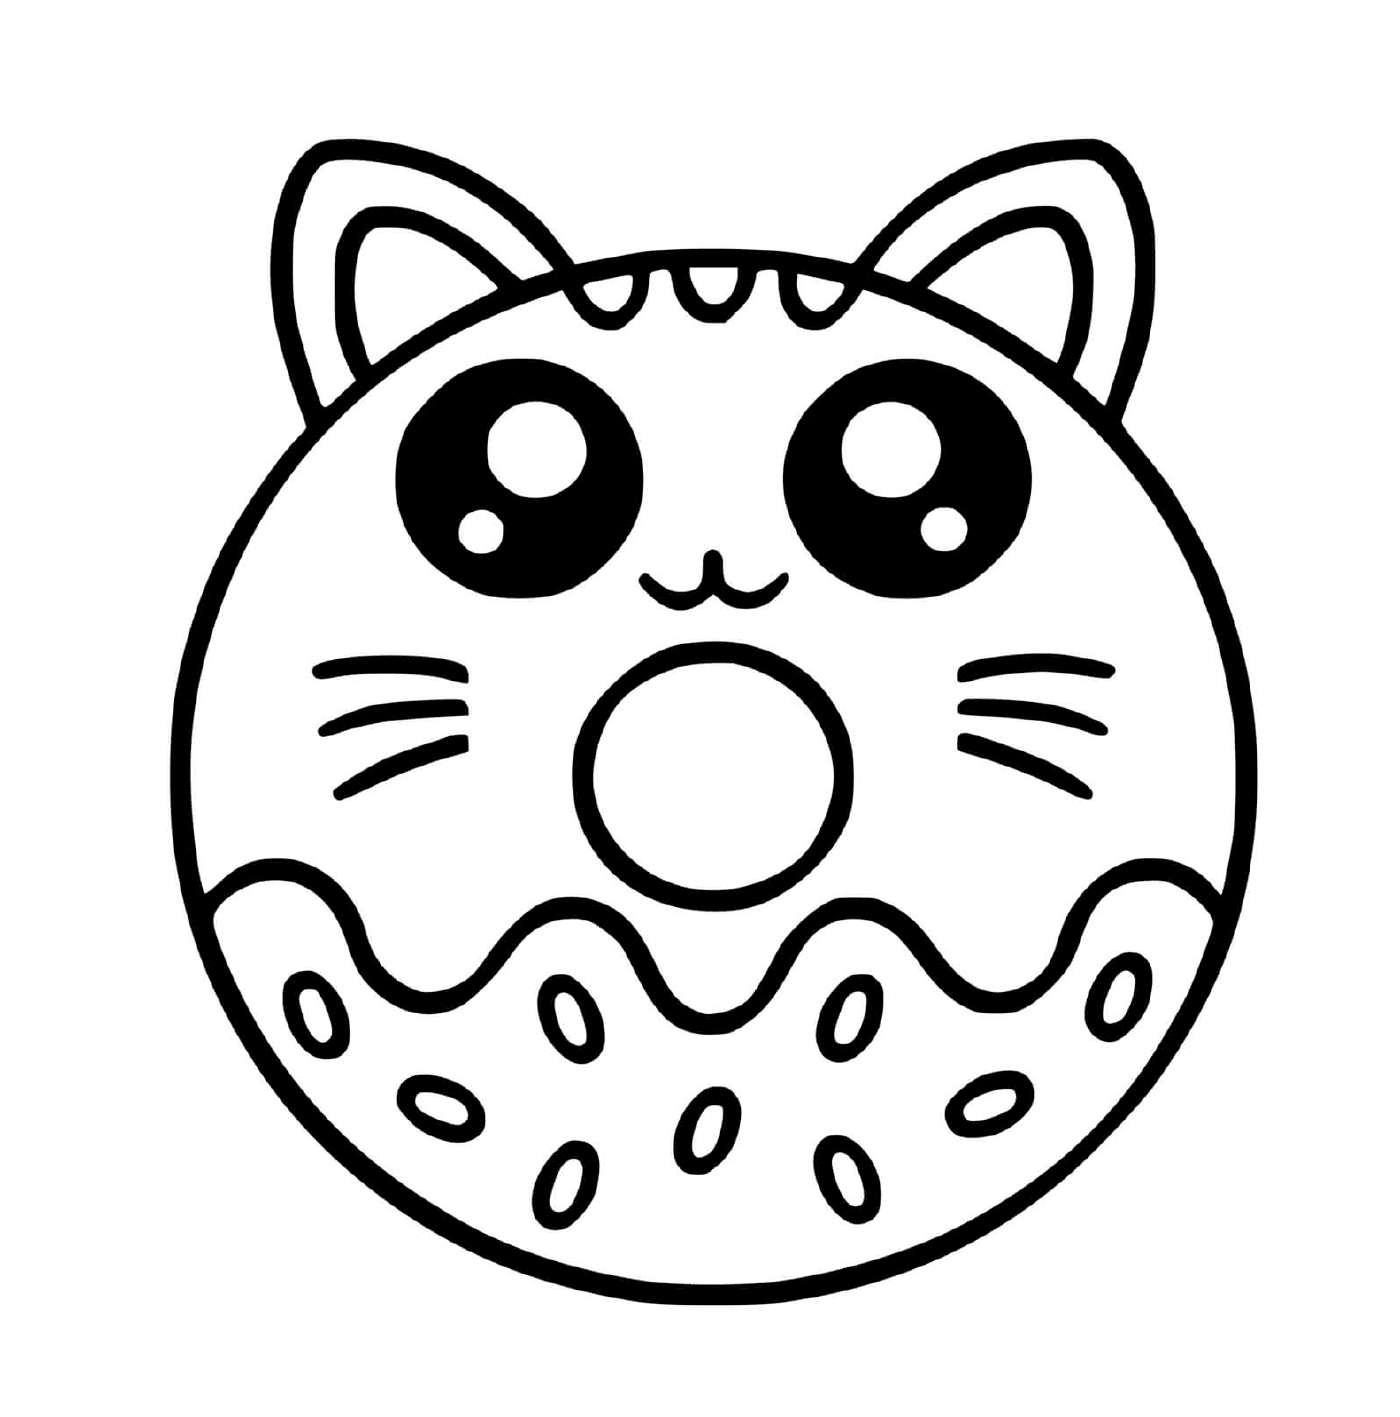  Donut-chat kawaii, bonito gourmand 